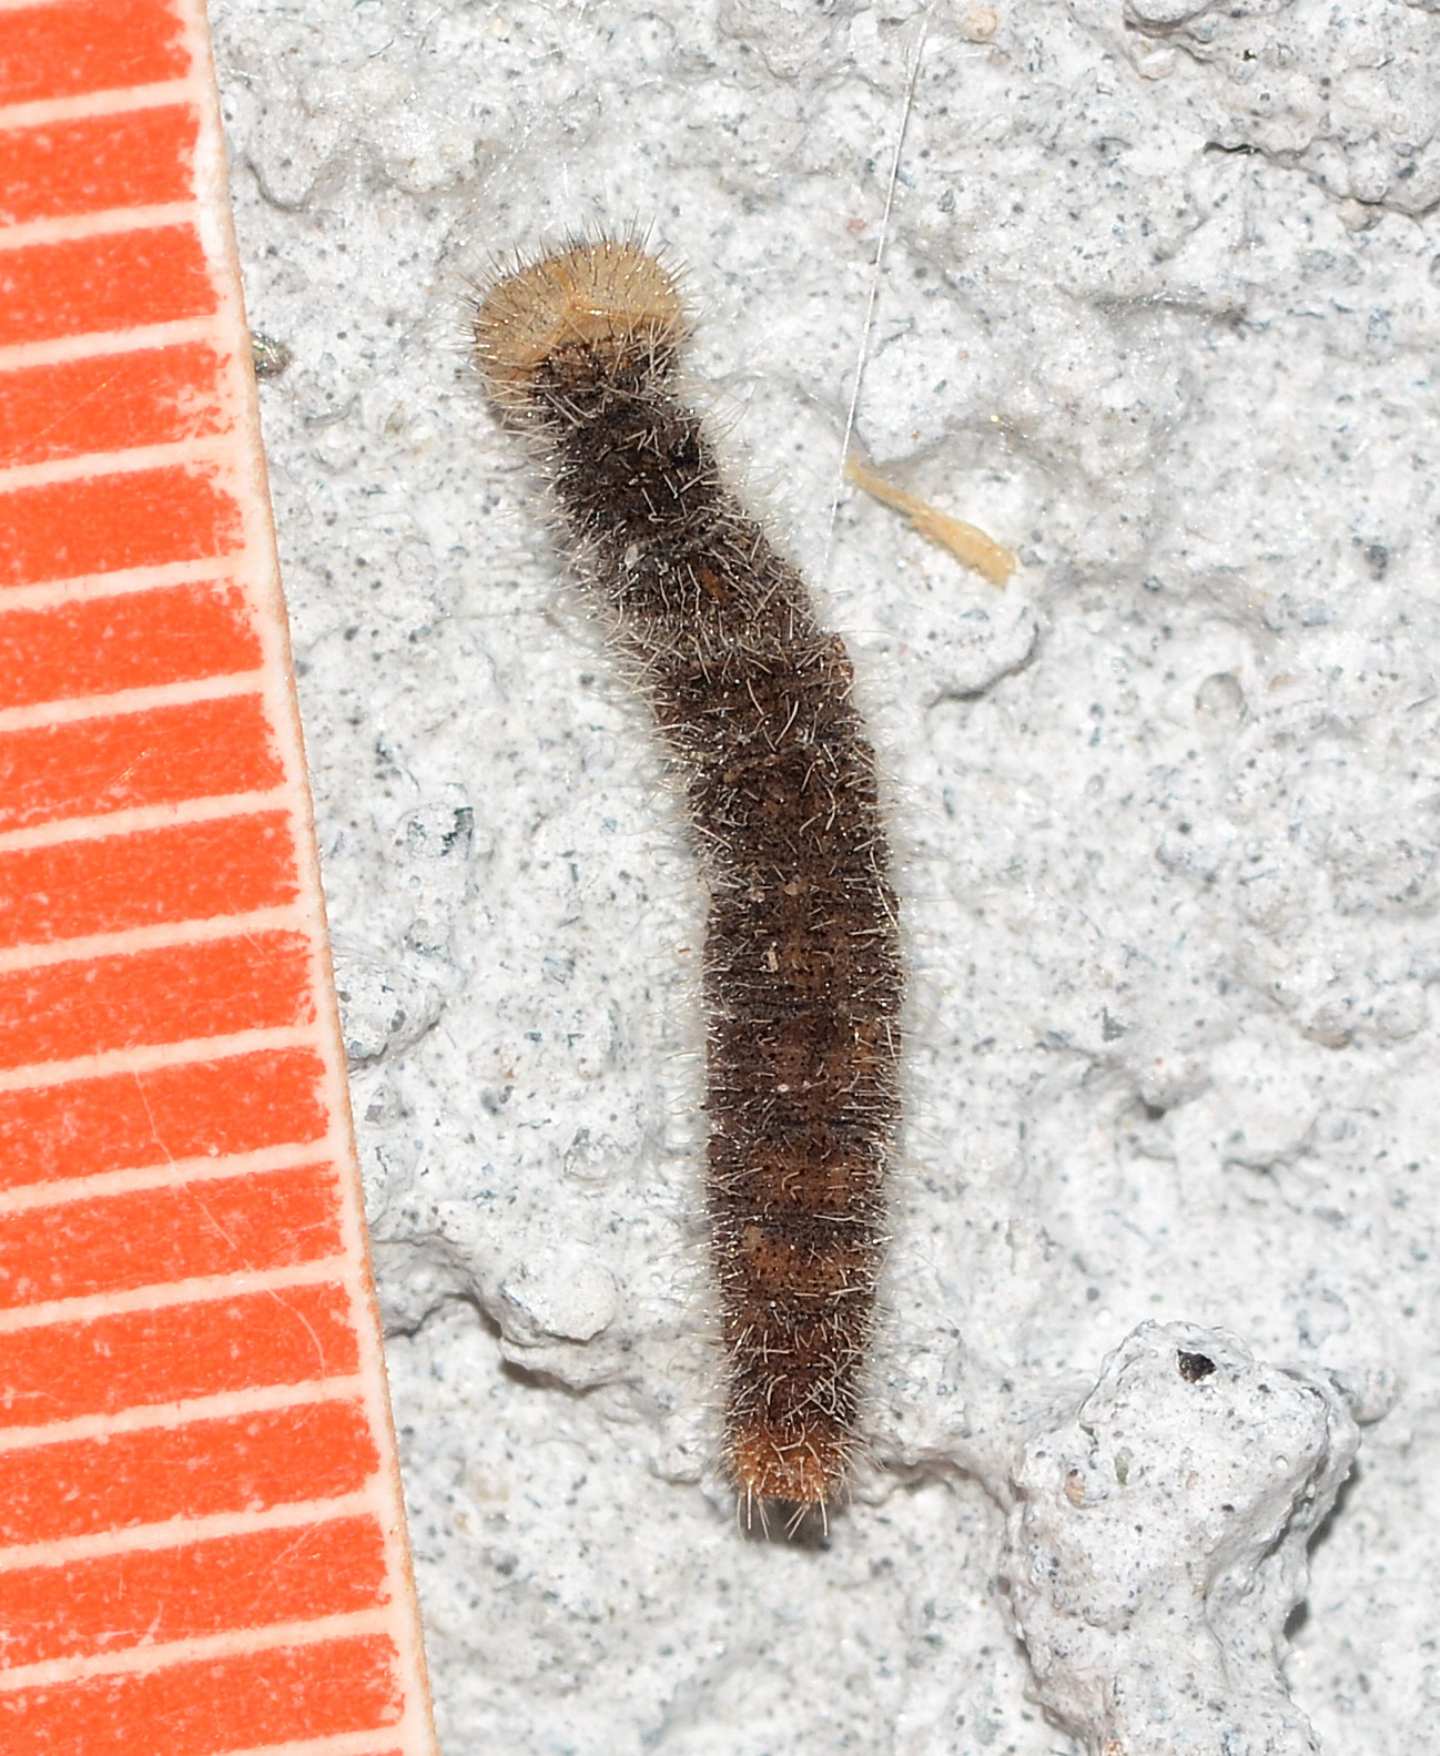 Larva strana